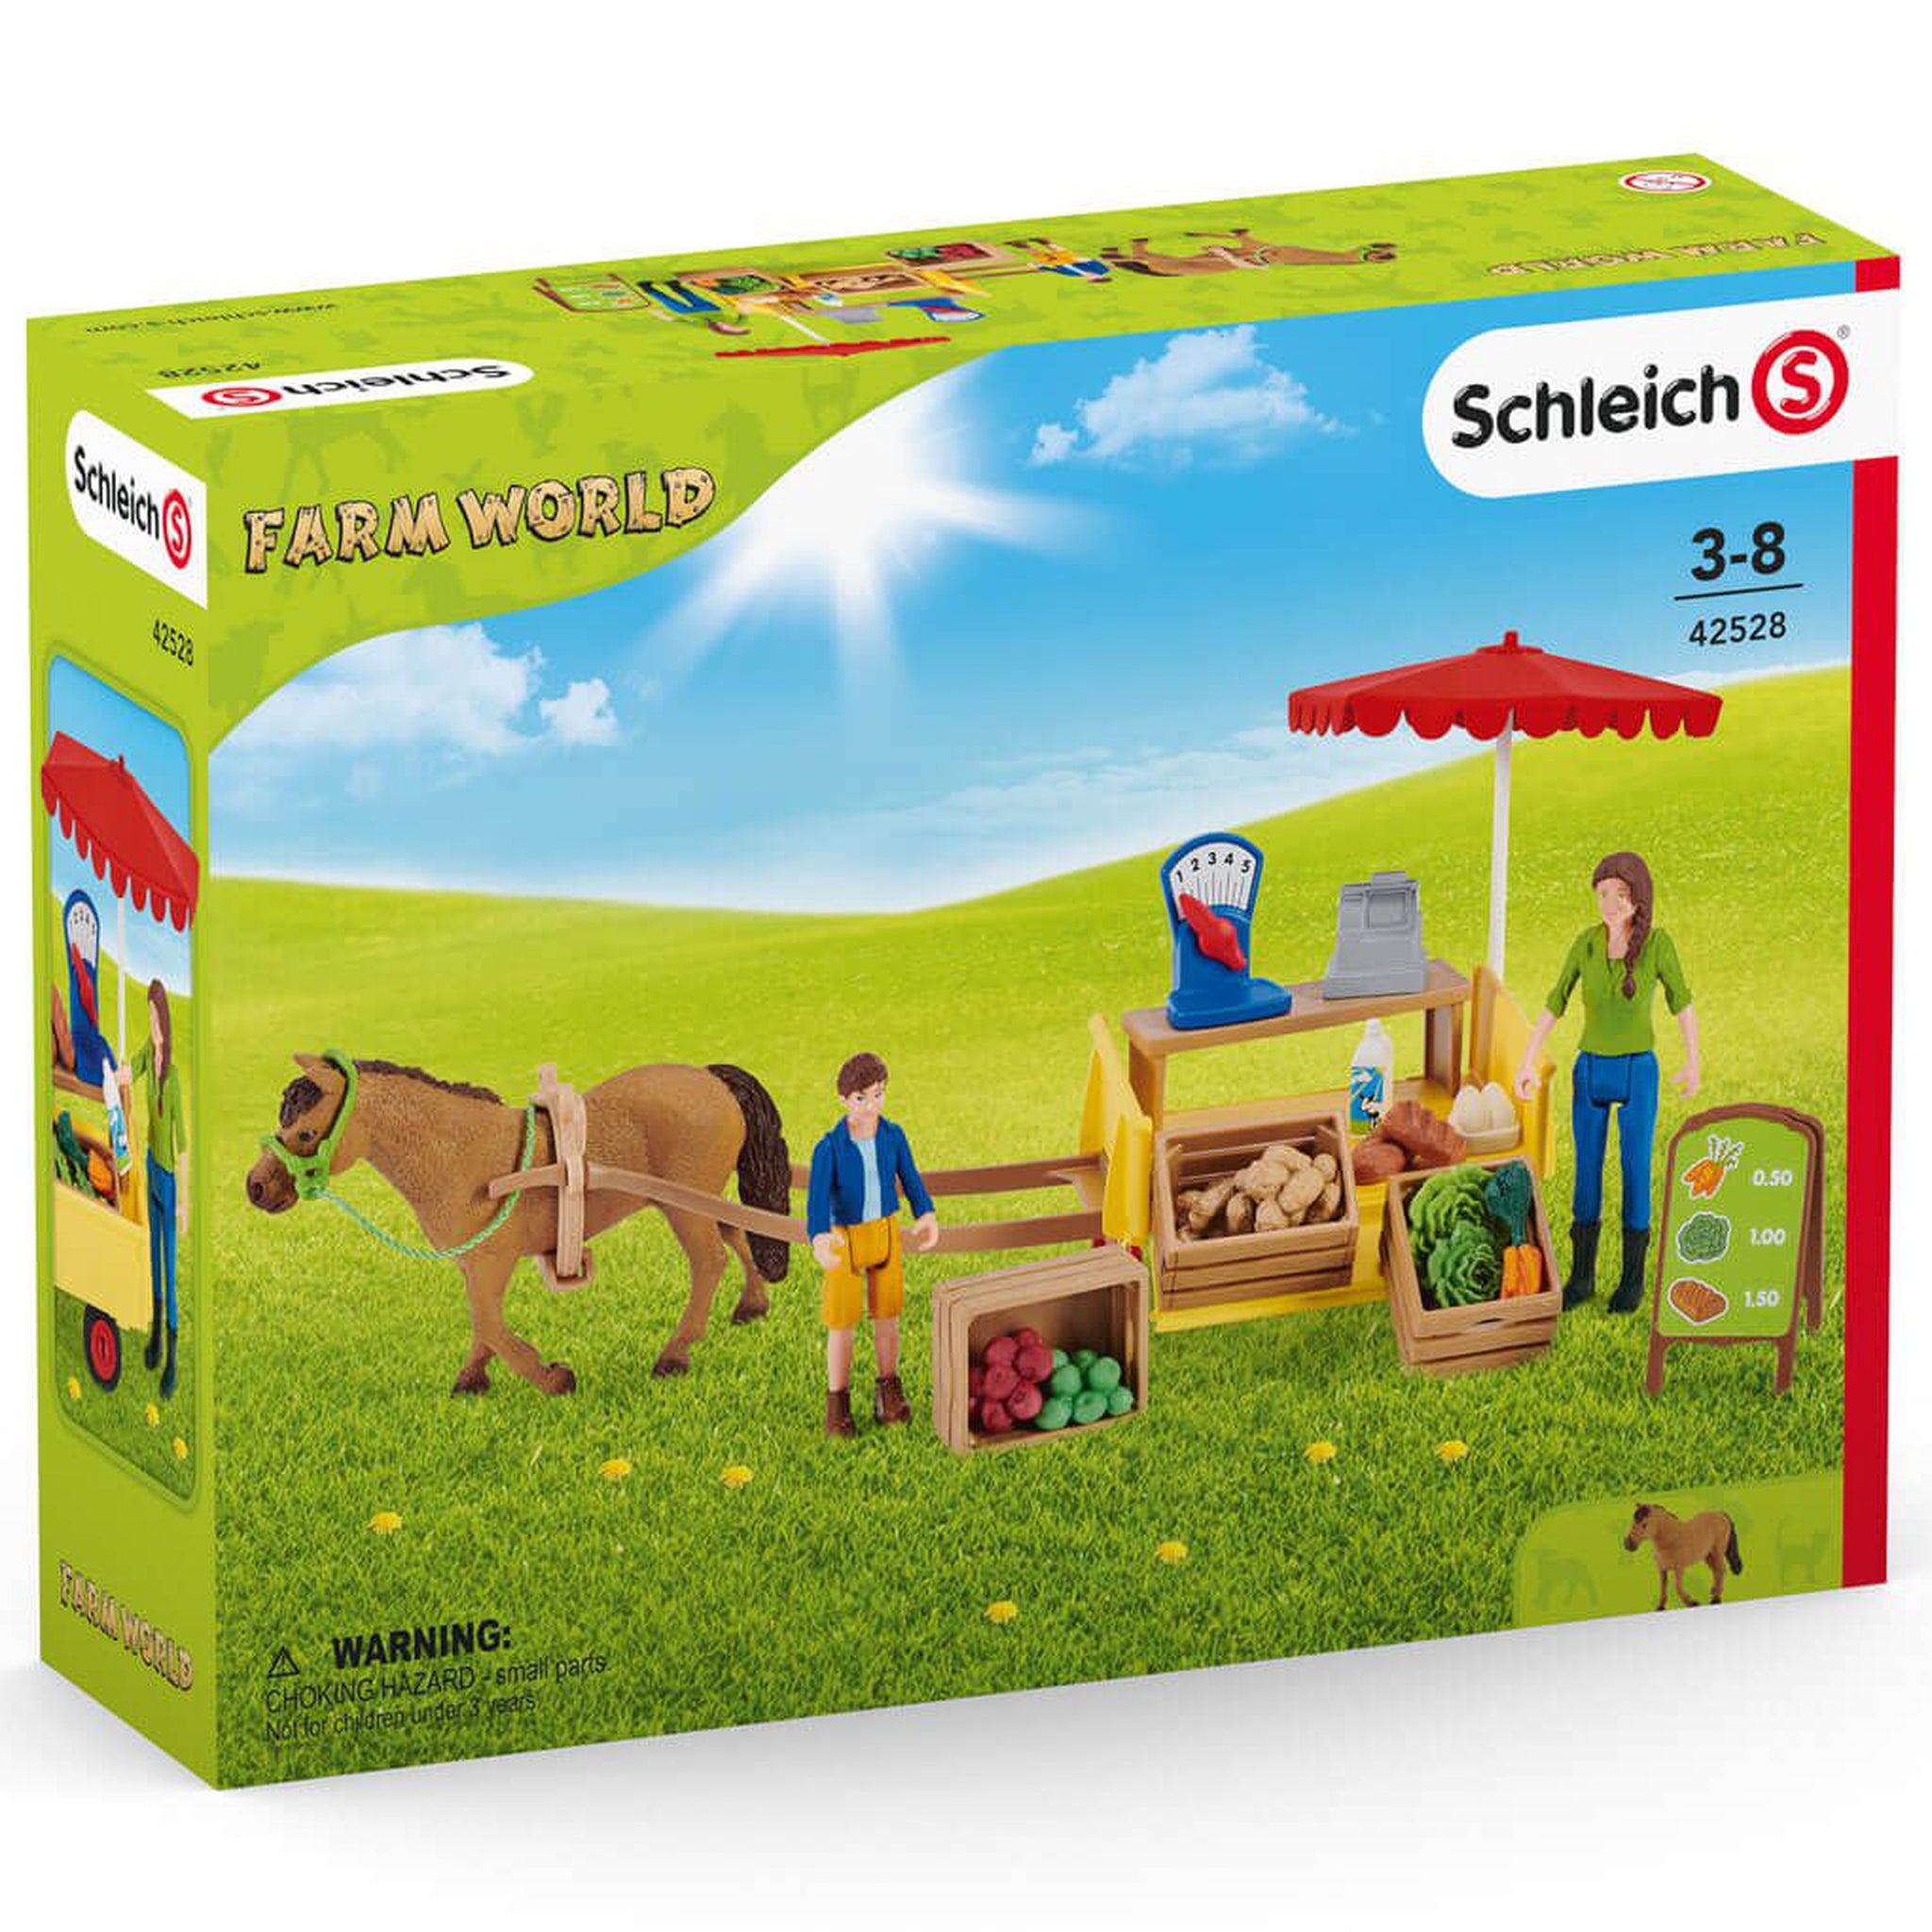 Schleich 42528 Mobile Farm Stand in box